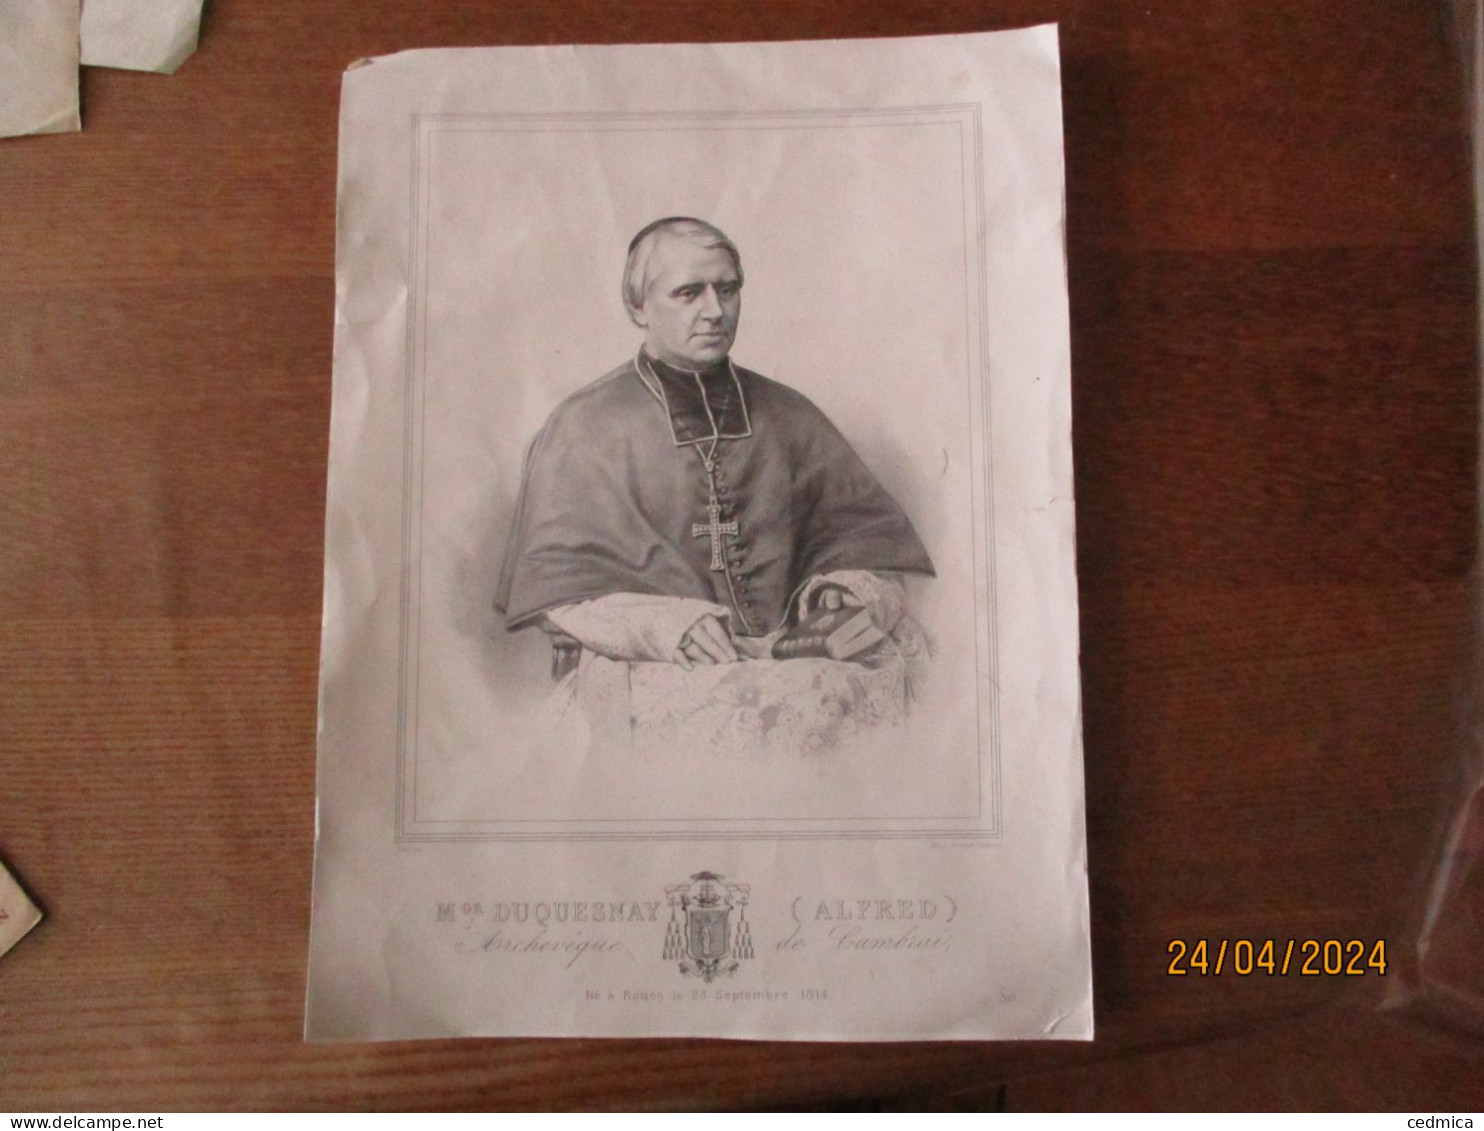 Mgr DUQUESNAY (ALFRED) ARCHEVÊQUE DE CAMBRAI NE A ROUEN LE 23 SEPTEMBRE 1814 LITH.J.RENANT CAMBRAI 36cm/26cm - Religión & Esoterismo